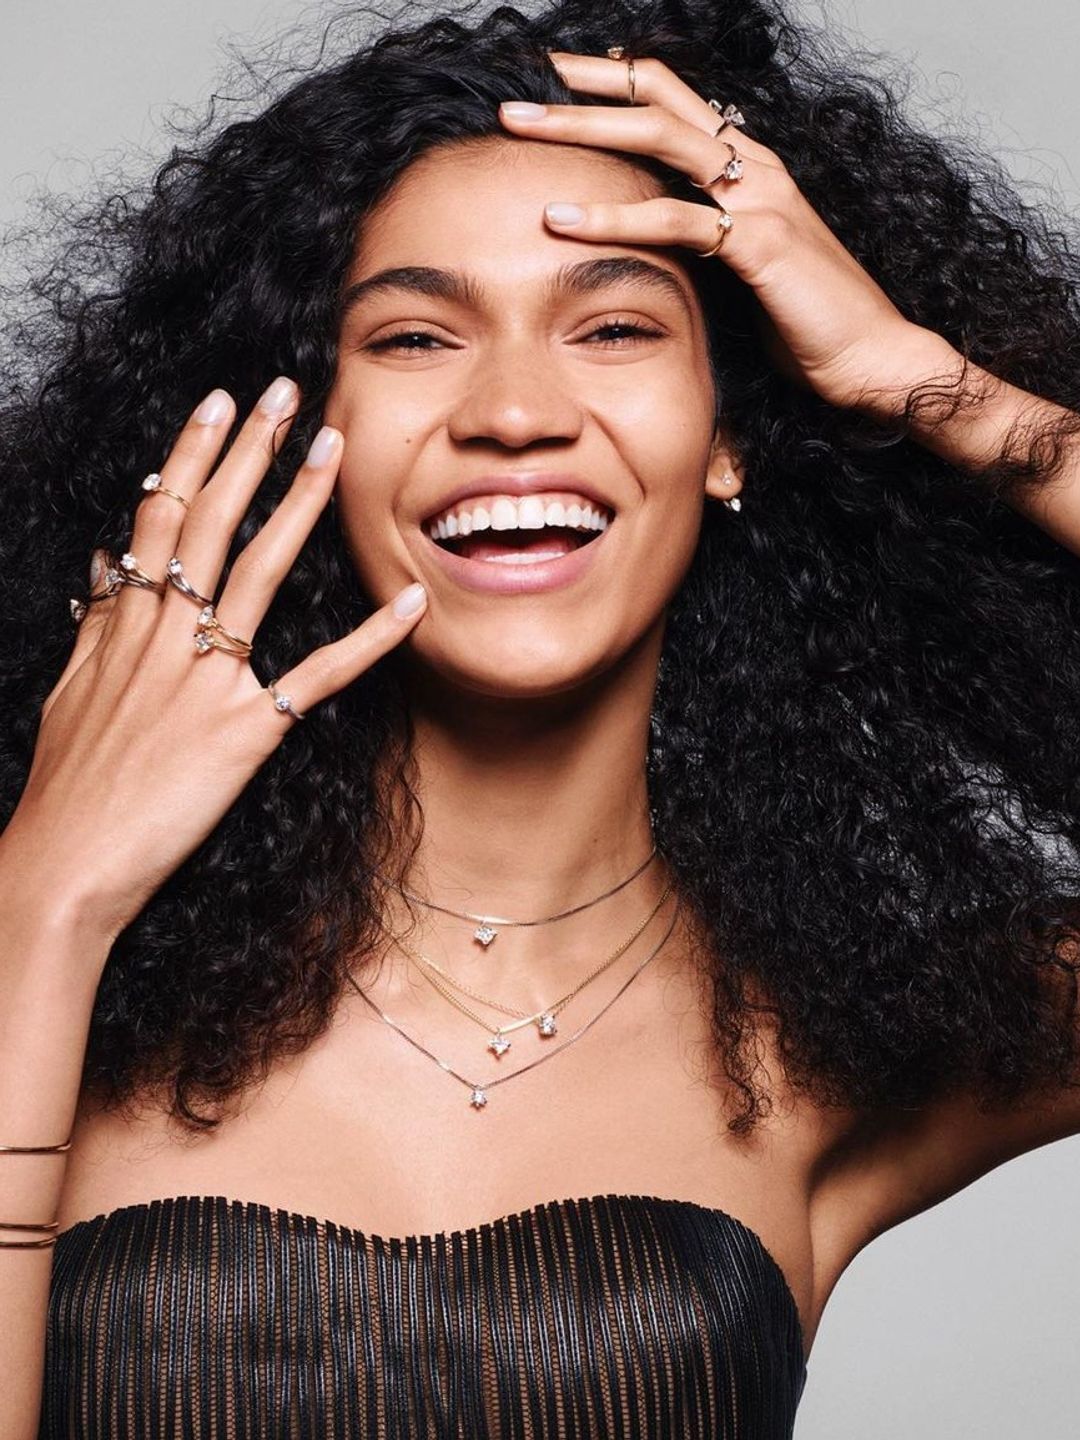 Model Raynara Negrine posing with Pandora Lab-grown diamond jewellery on her hands